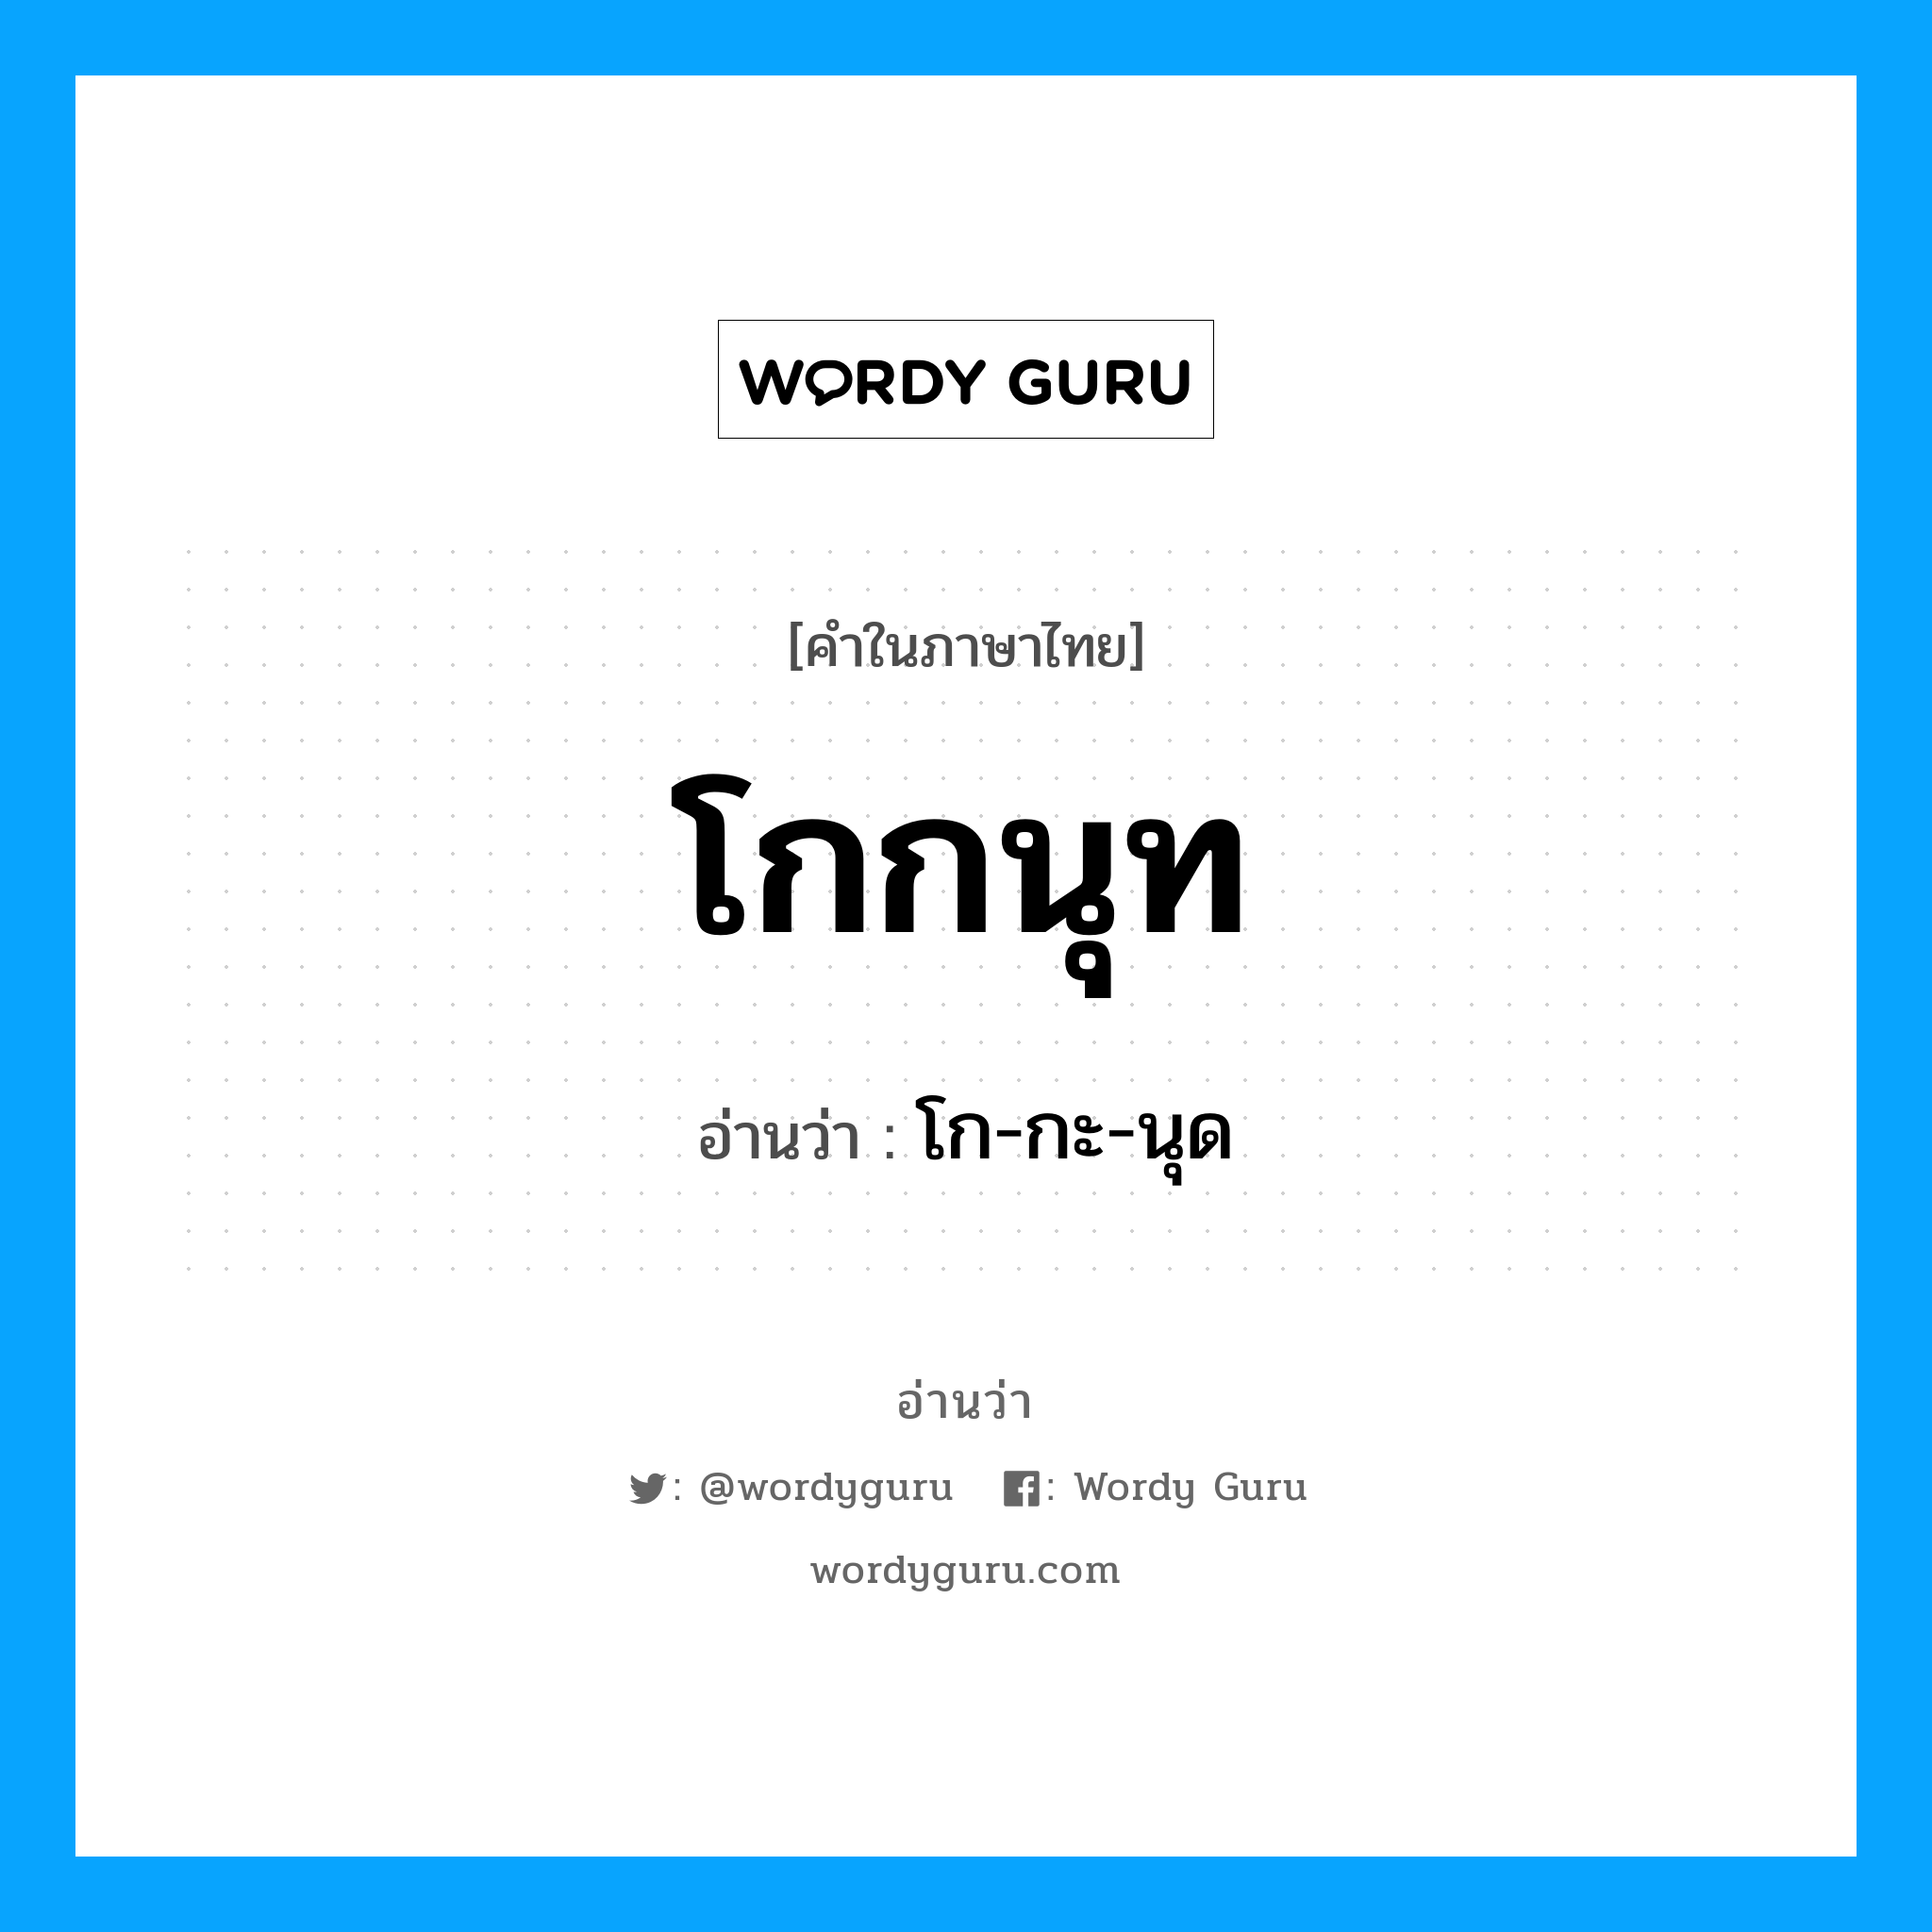 โก-กะ-นุด เป็นคำอ่านของคำไหน?, คำในภาษาไทย โก-กะ-นุด อ่านว่า โกกนุท